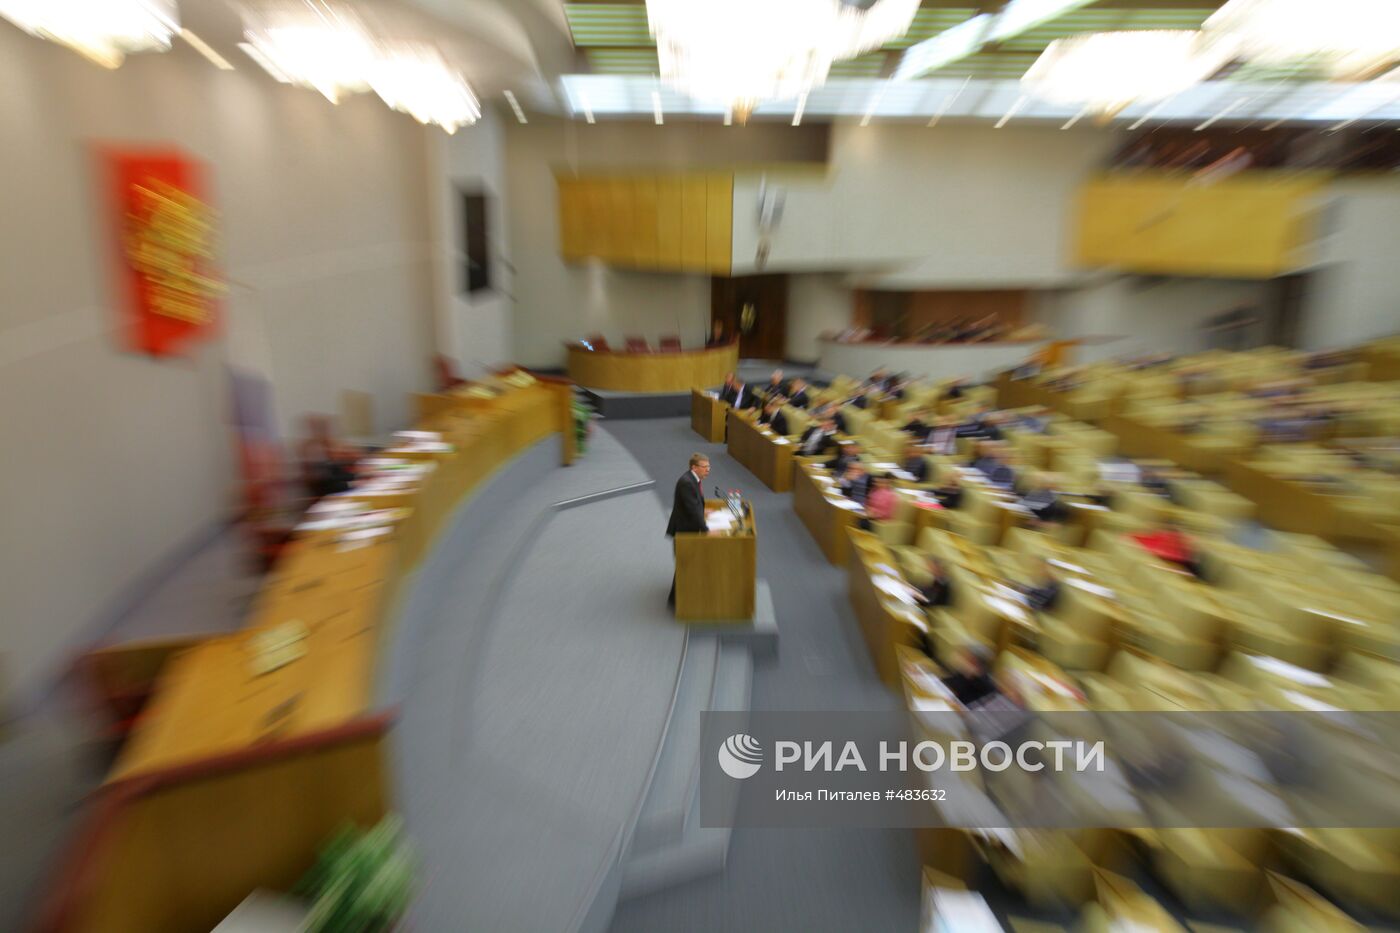 Принятие в Госдуме бюджета РФ на 2010 год